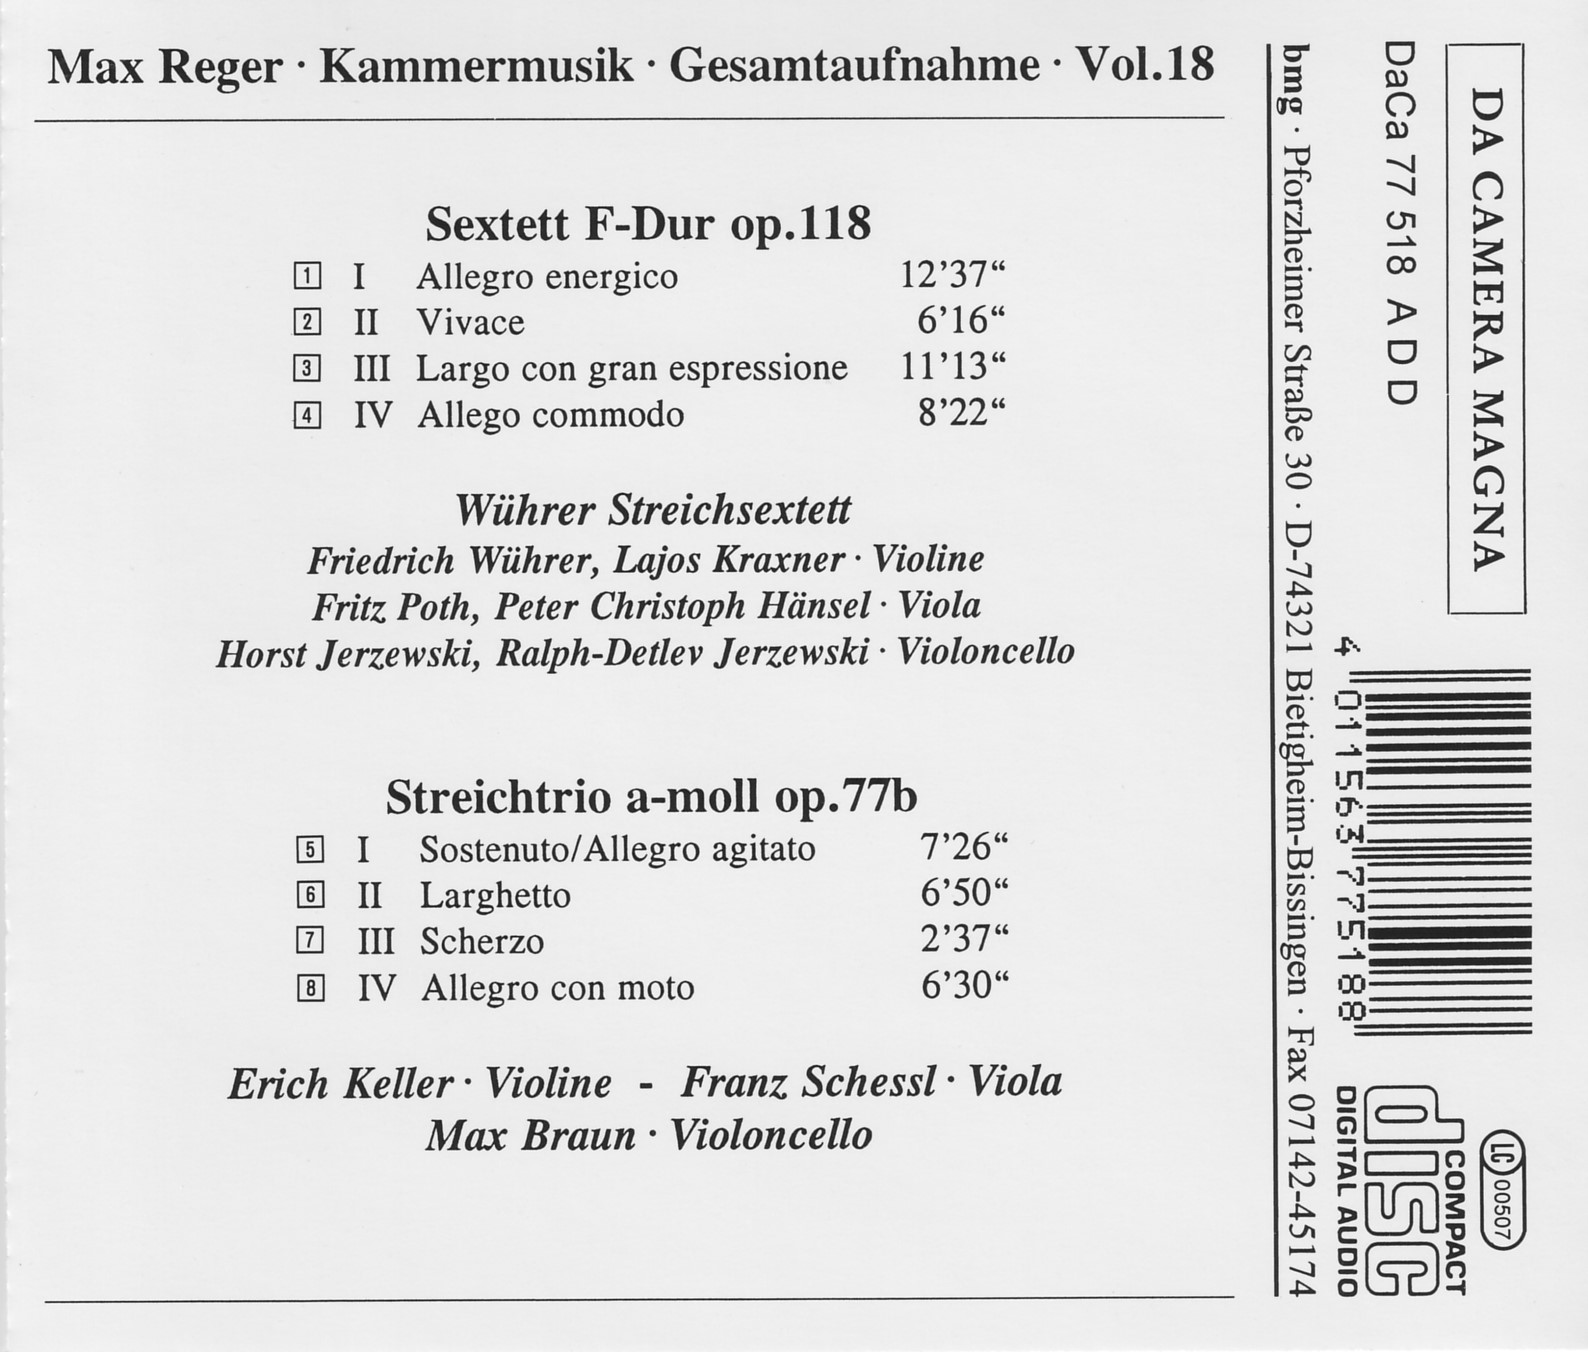 Max Reger - Kammermusik komplett Vol. 18